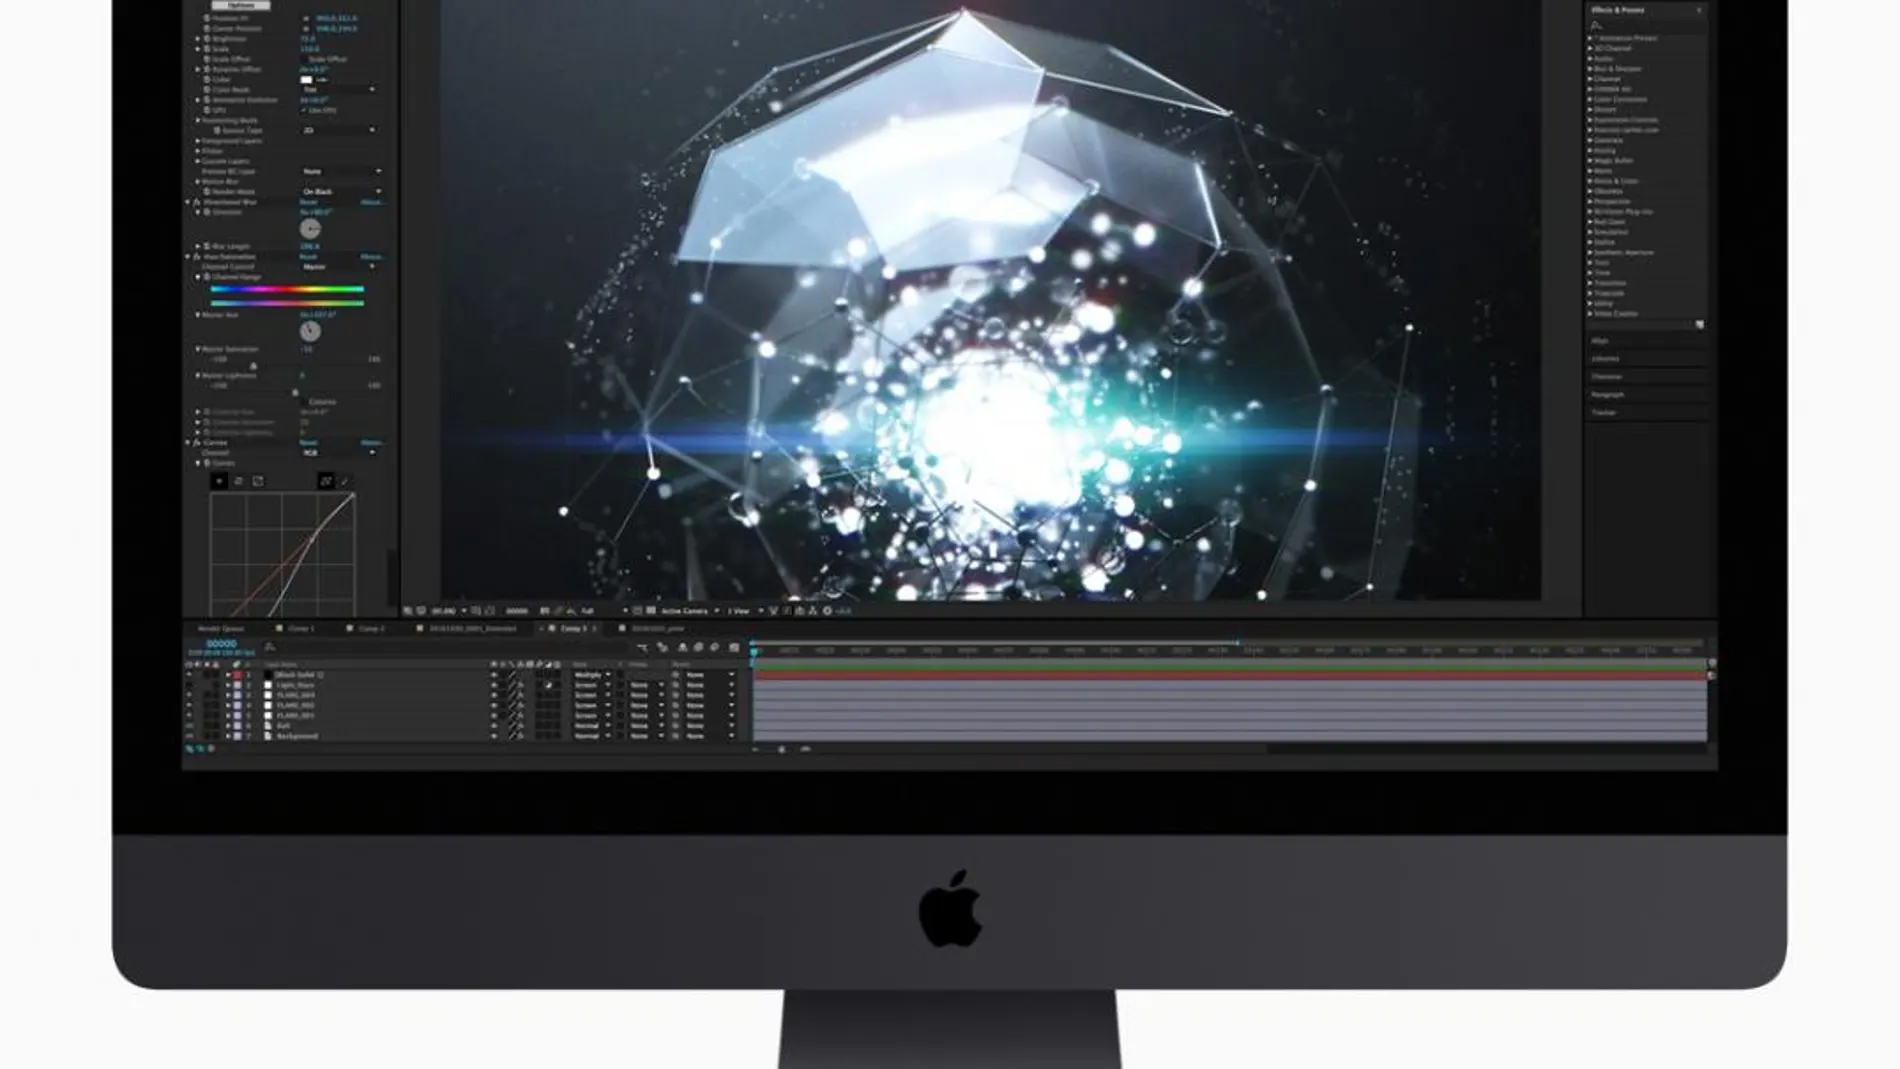 El nuevo iMac Pro de Apple